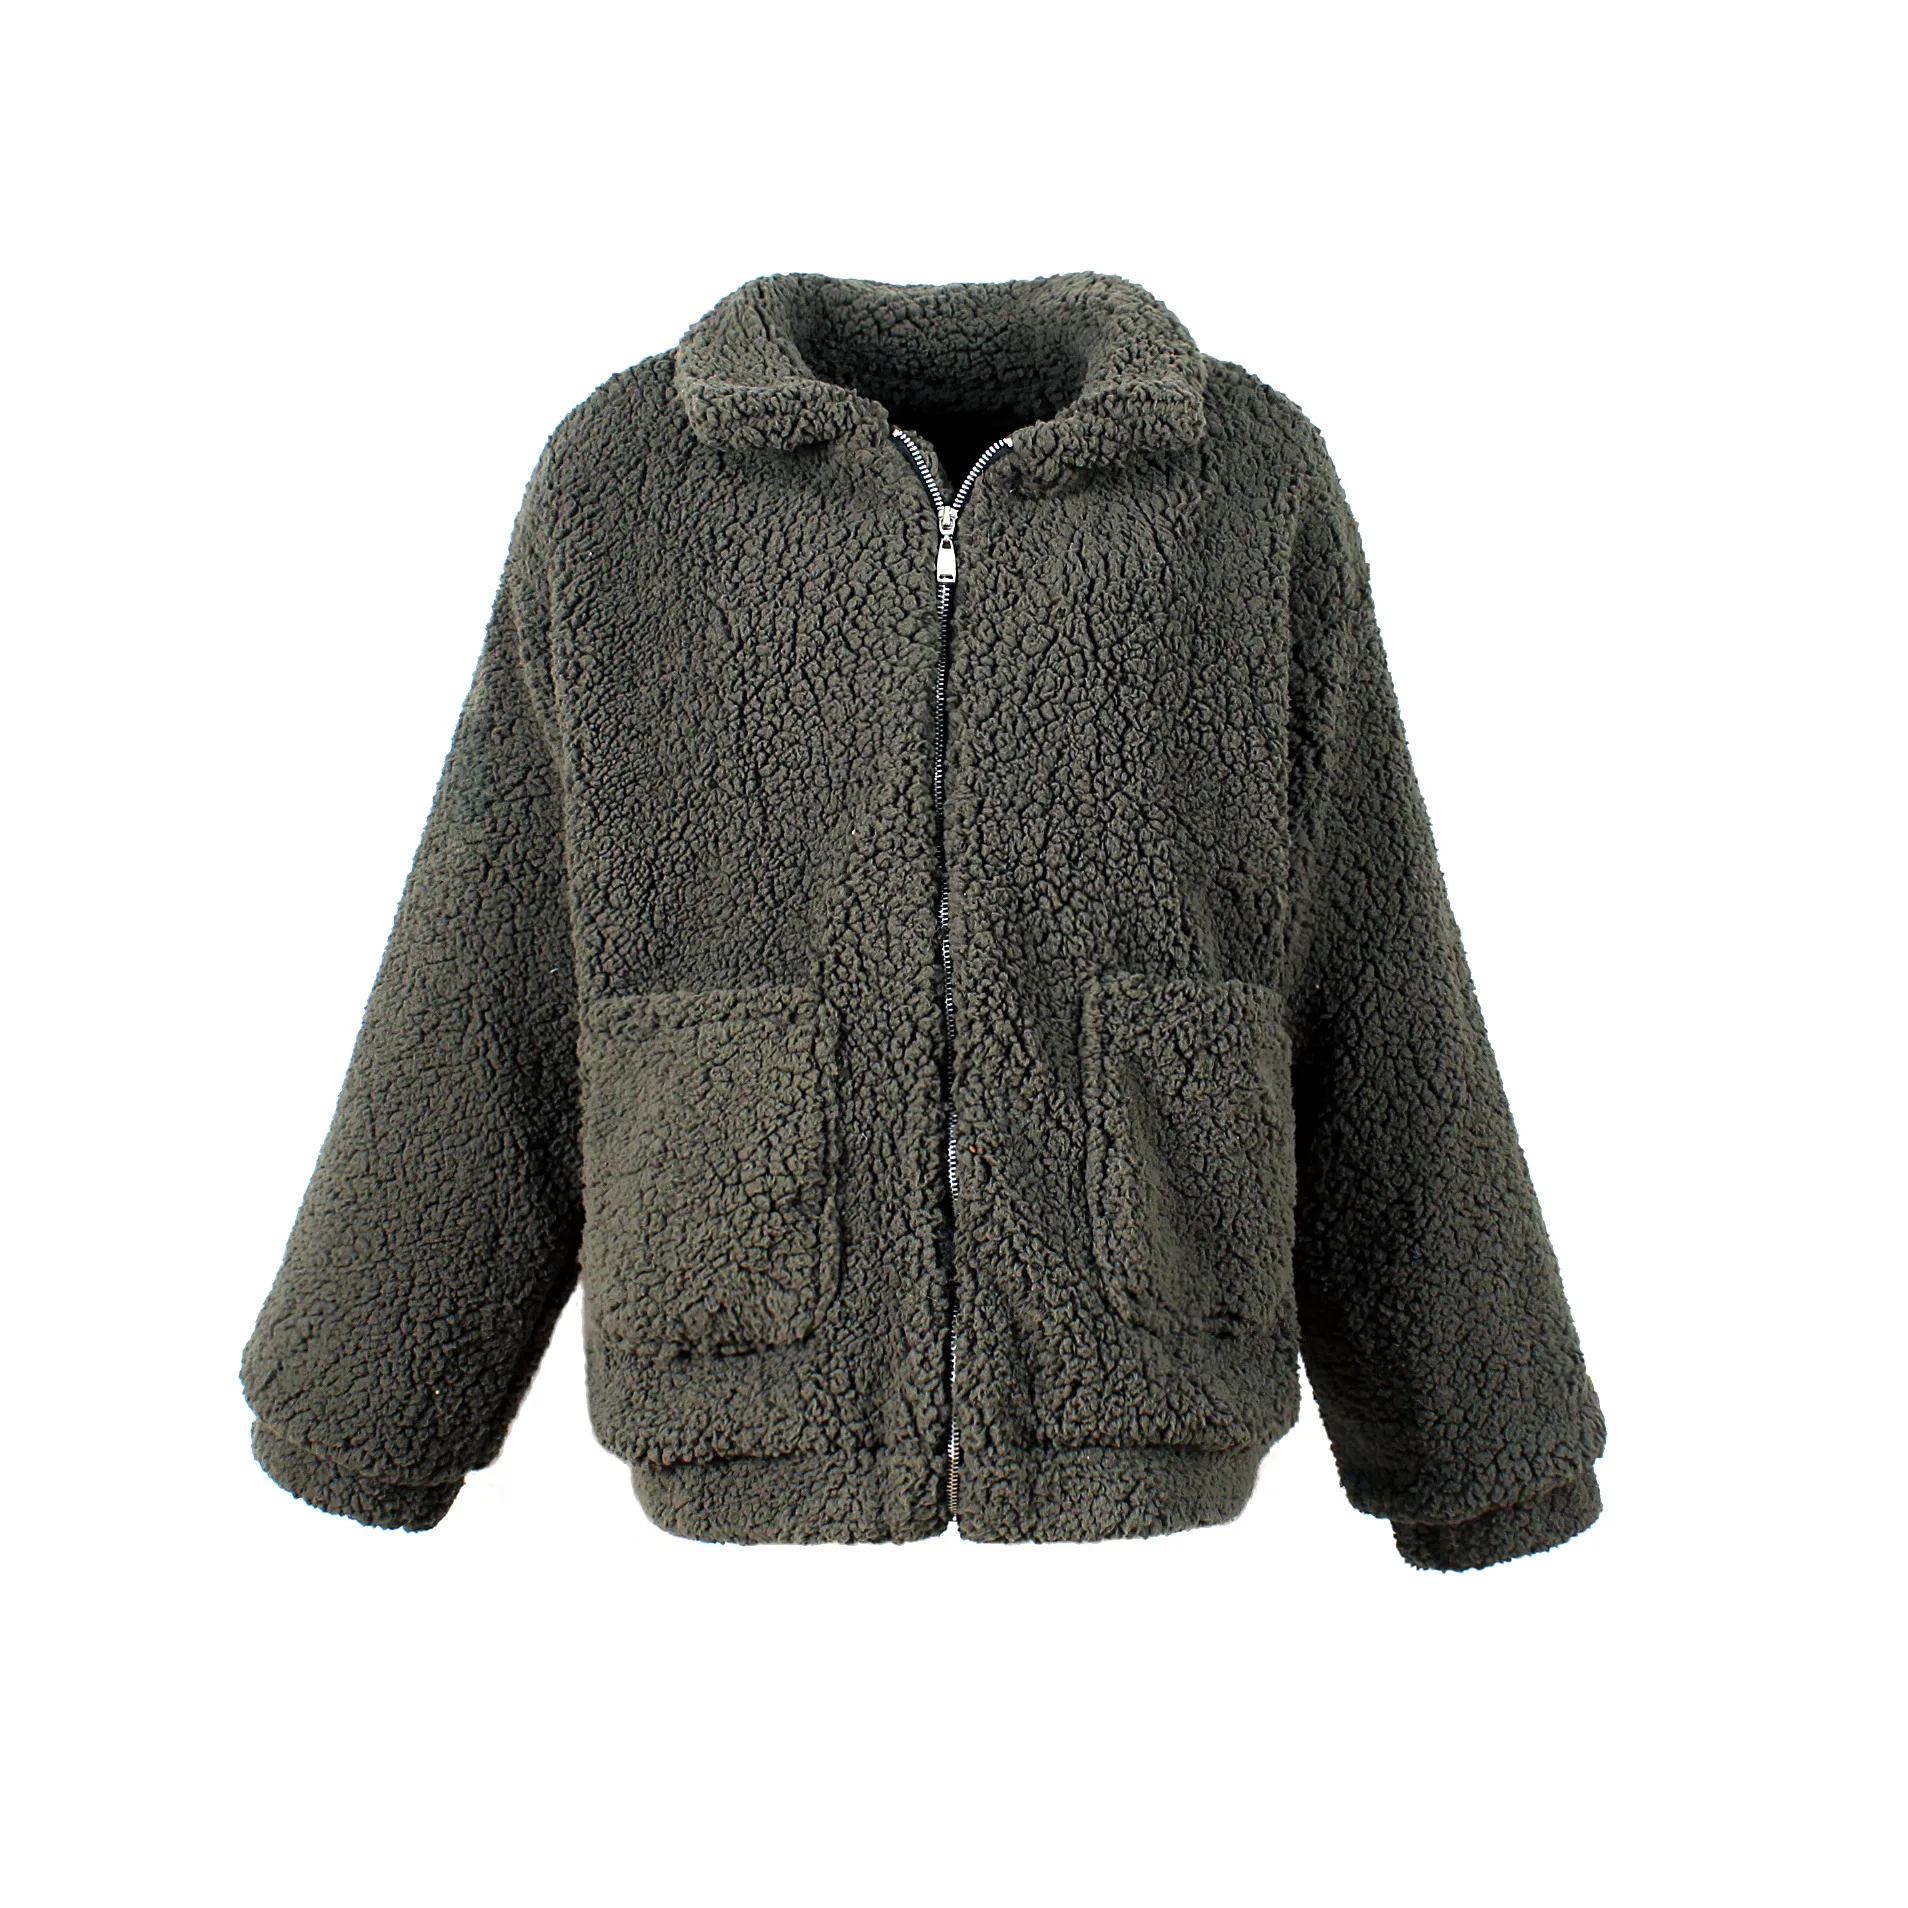 Zogaa, элегантное пальто из искусственного меха для женщин, осень, зима, толстая, теплая, мягкая, флисовая куртка, карман, на молнии, верхняя одежда, пальто, мишка, плюшевое пальто - Color: Army green